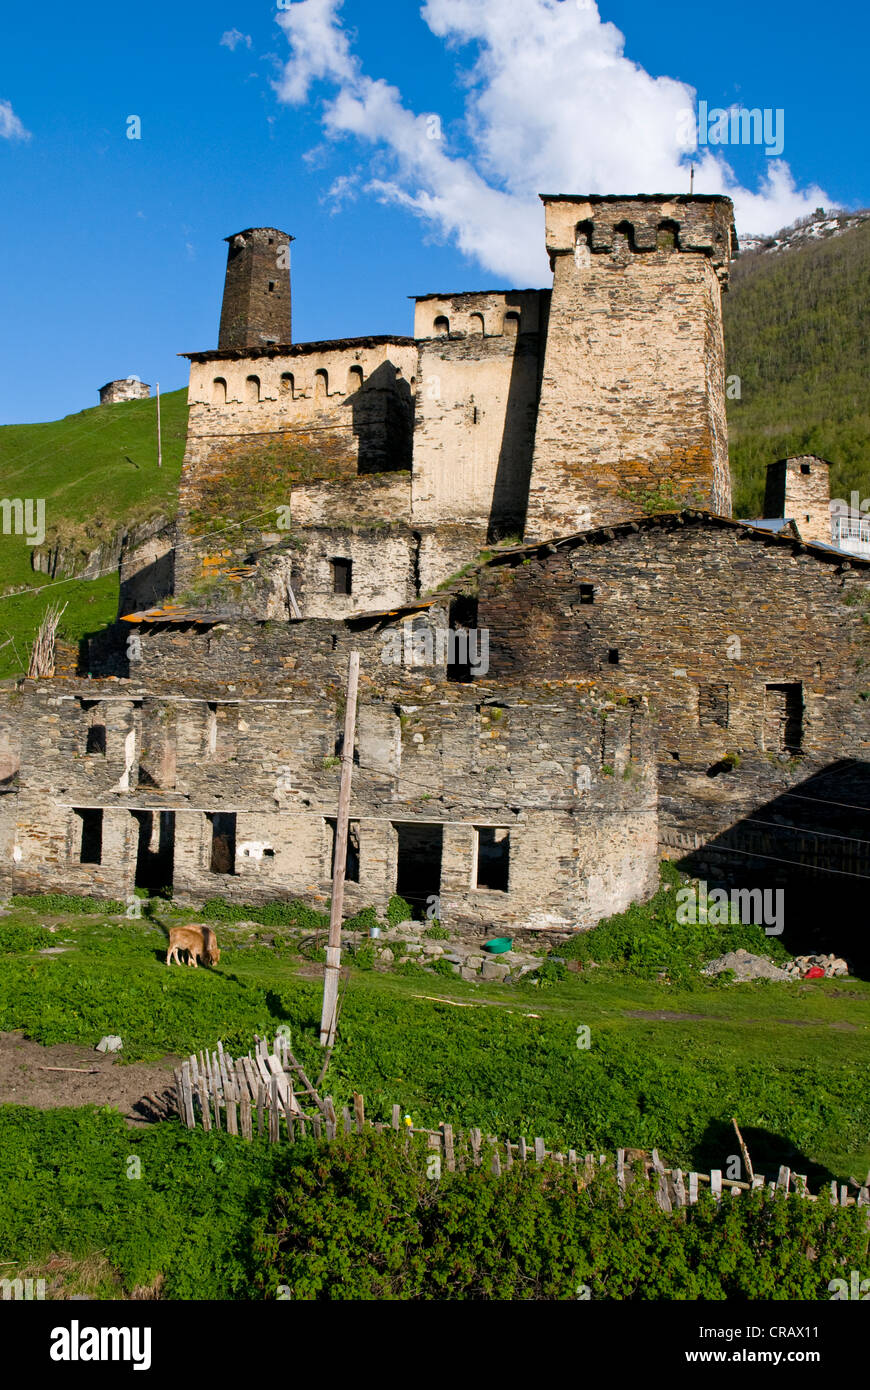 Village de montagne historique Ushguli, UNESCO World Heritage site, province de Svaneti, Géorgie, au Moyen-Orient Banque D'Images